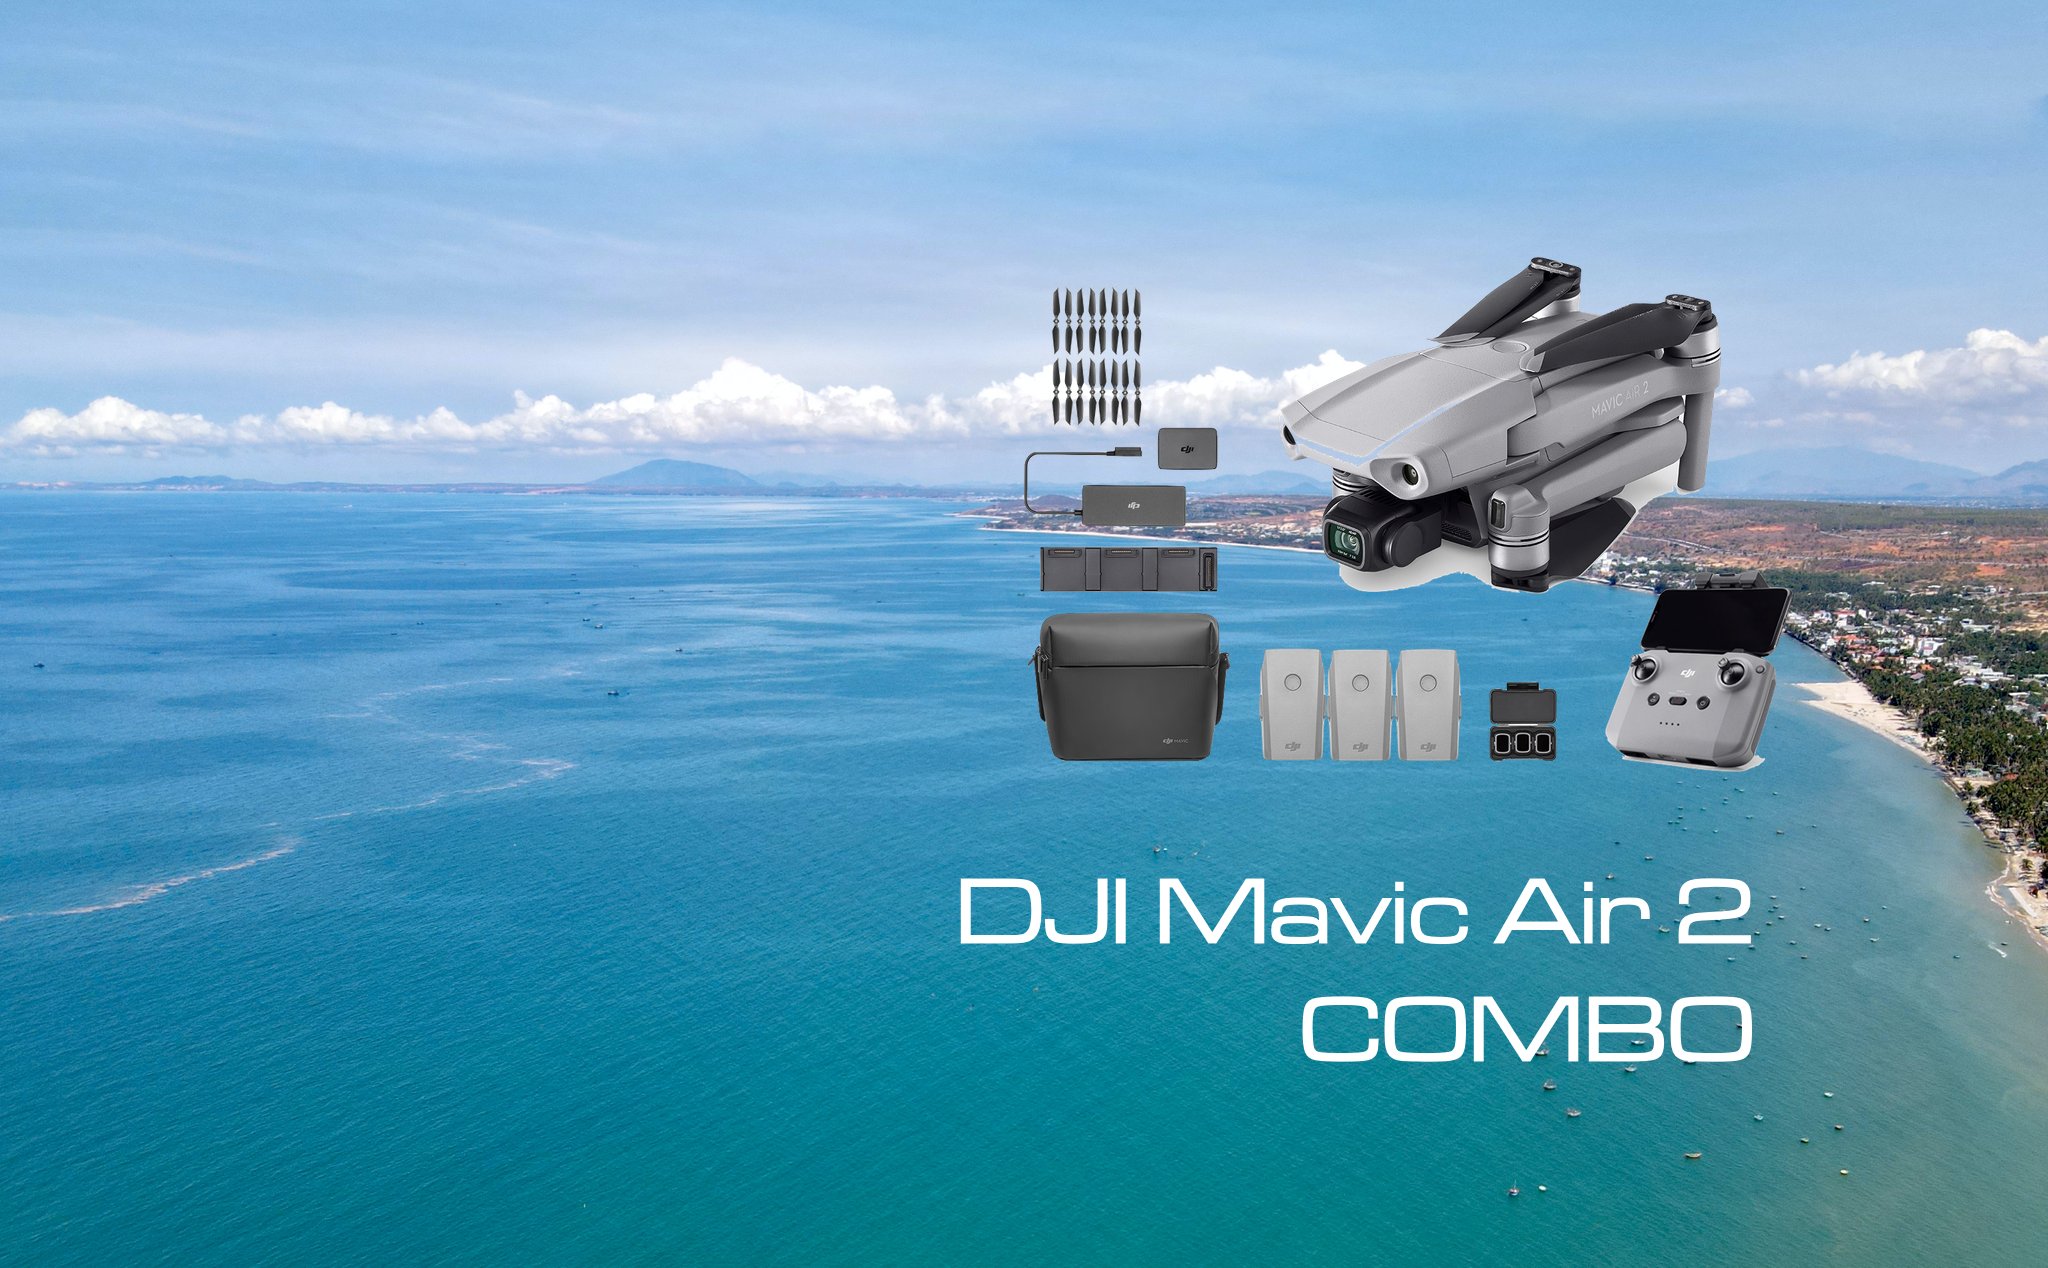 Trên tay review DJI Mavic Air 2 Combo: Nếu thích chơi drone thì rất đáng mua